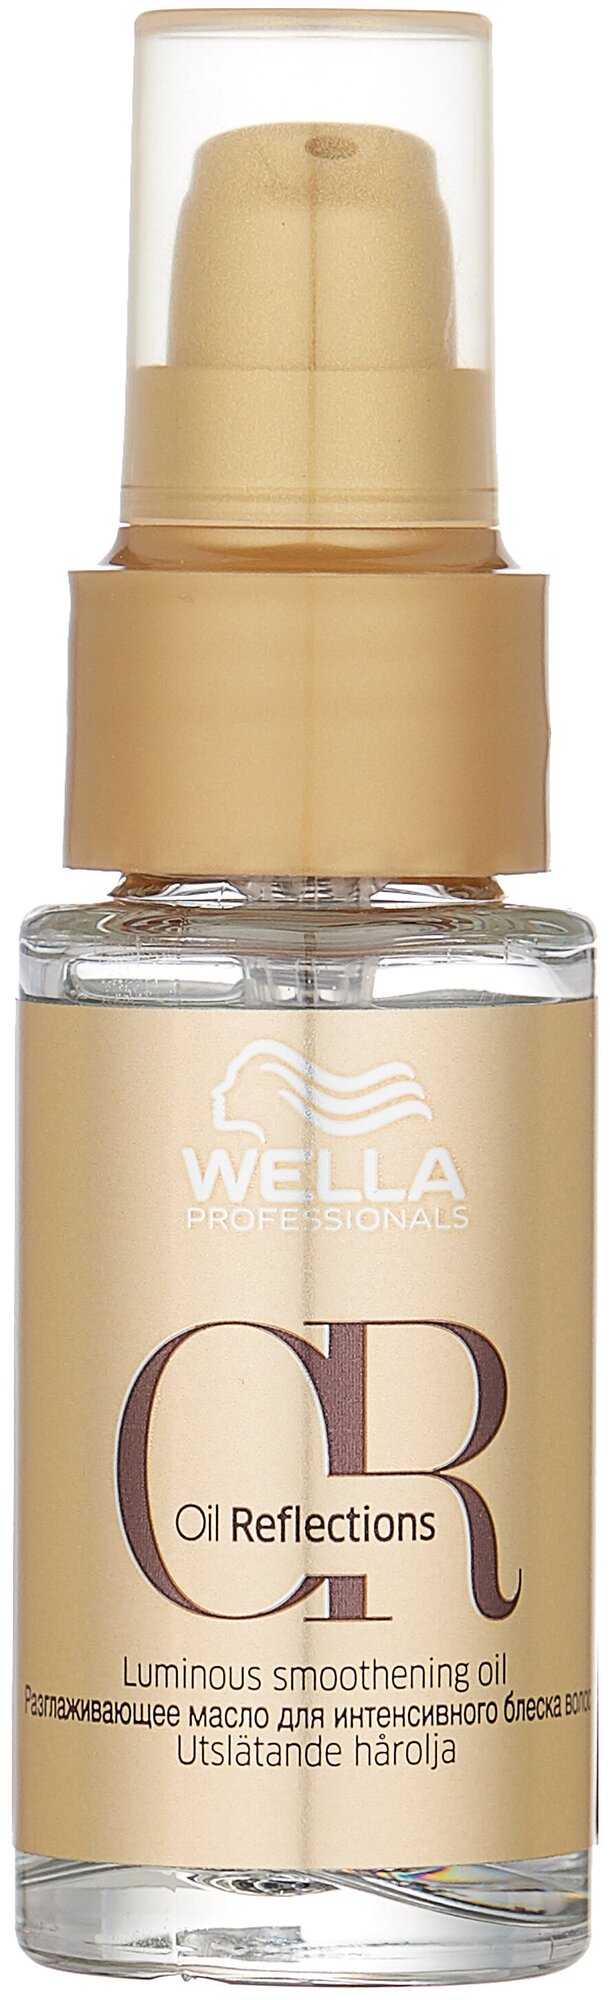 Wella Professionals Oil Reflections Разглаживающее масло для интенсивного блеска волос, 30 мл, бутылка